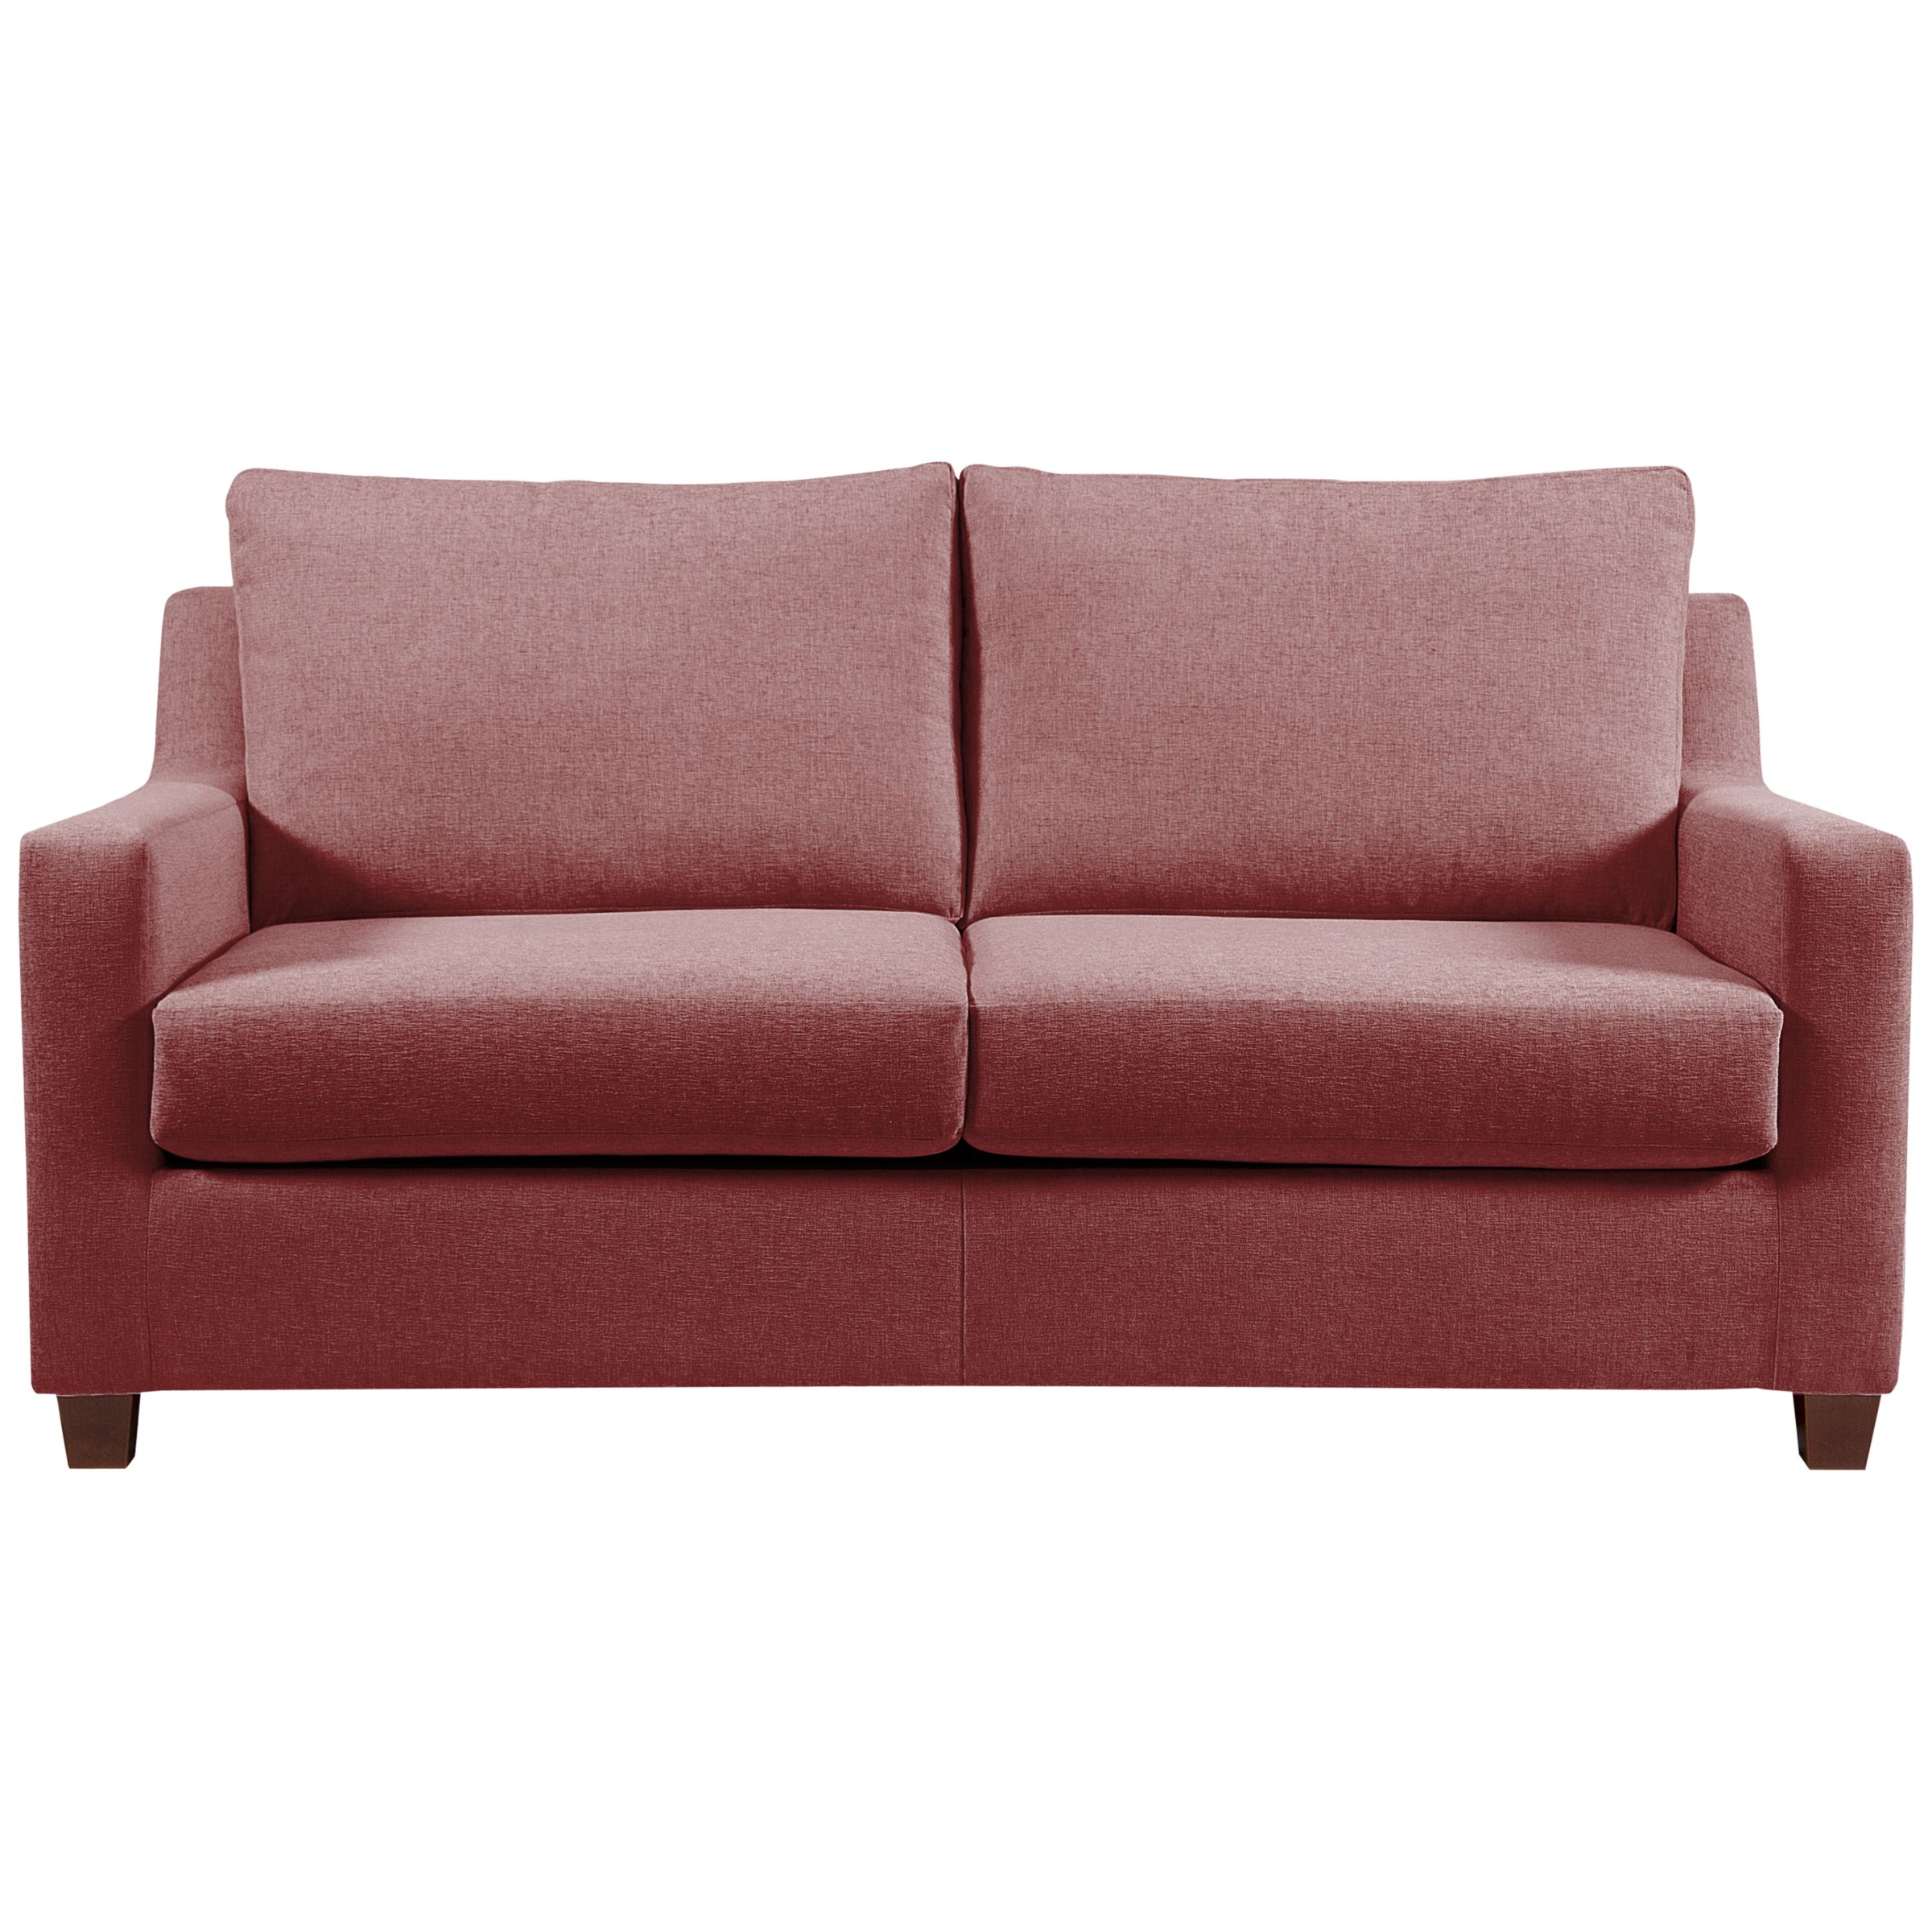 John Lewis Bizet Medium Sofa Beds with Open Sprung Mattress, Red, width 178cm